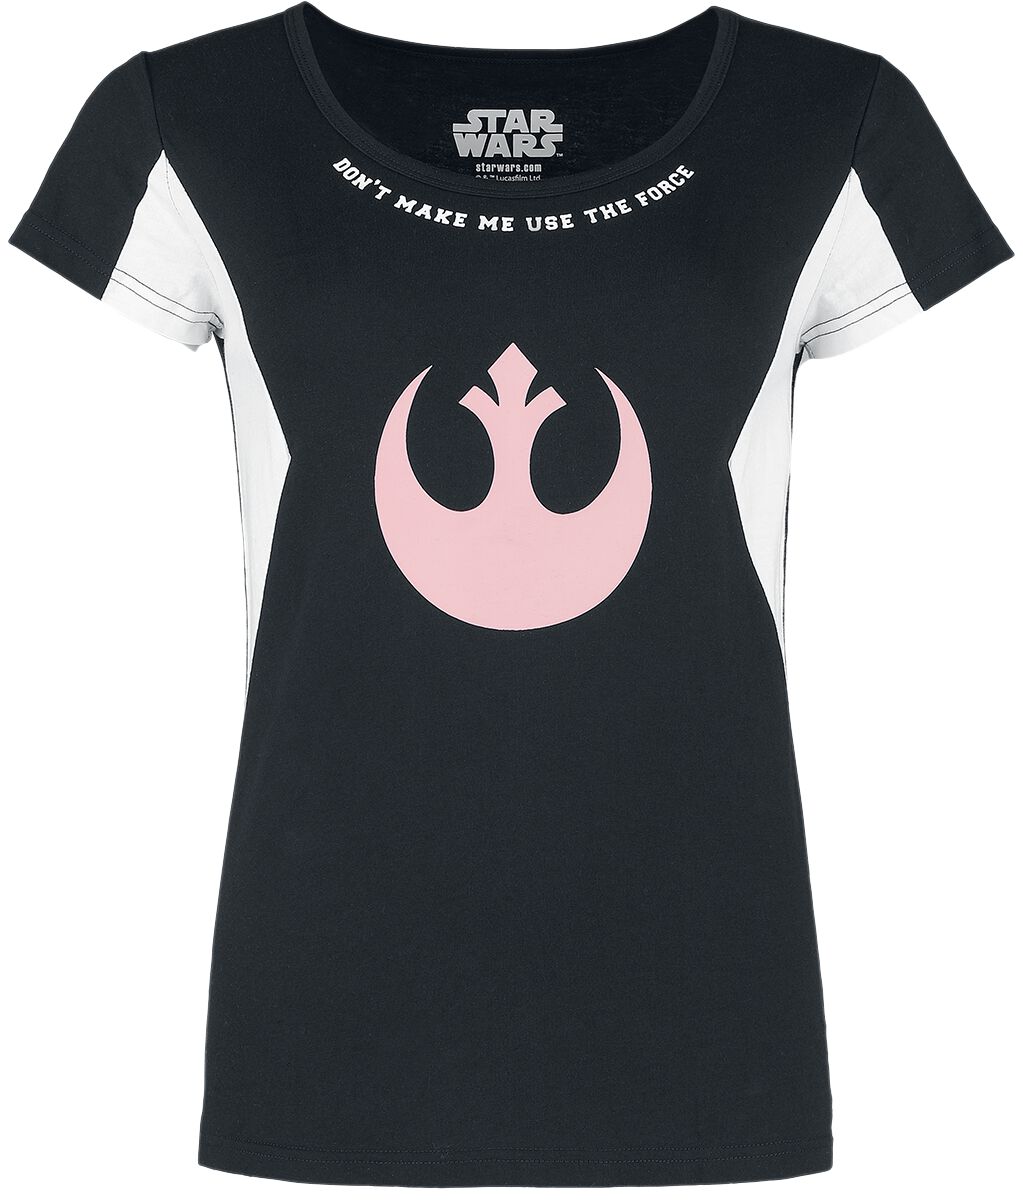 Star Wars T-Shirt - S bis M - für Damen - Größe M - schwarz/weiß  - EMP exklusives Merchandise! von Star Wars